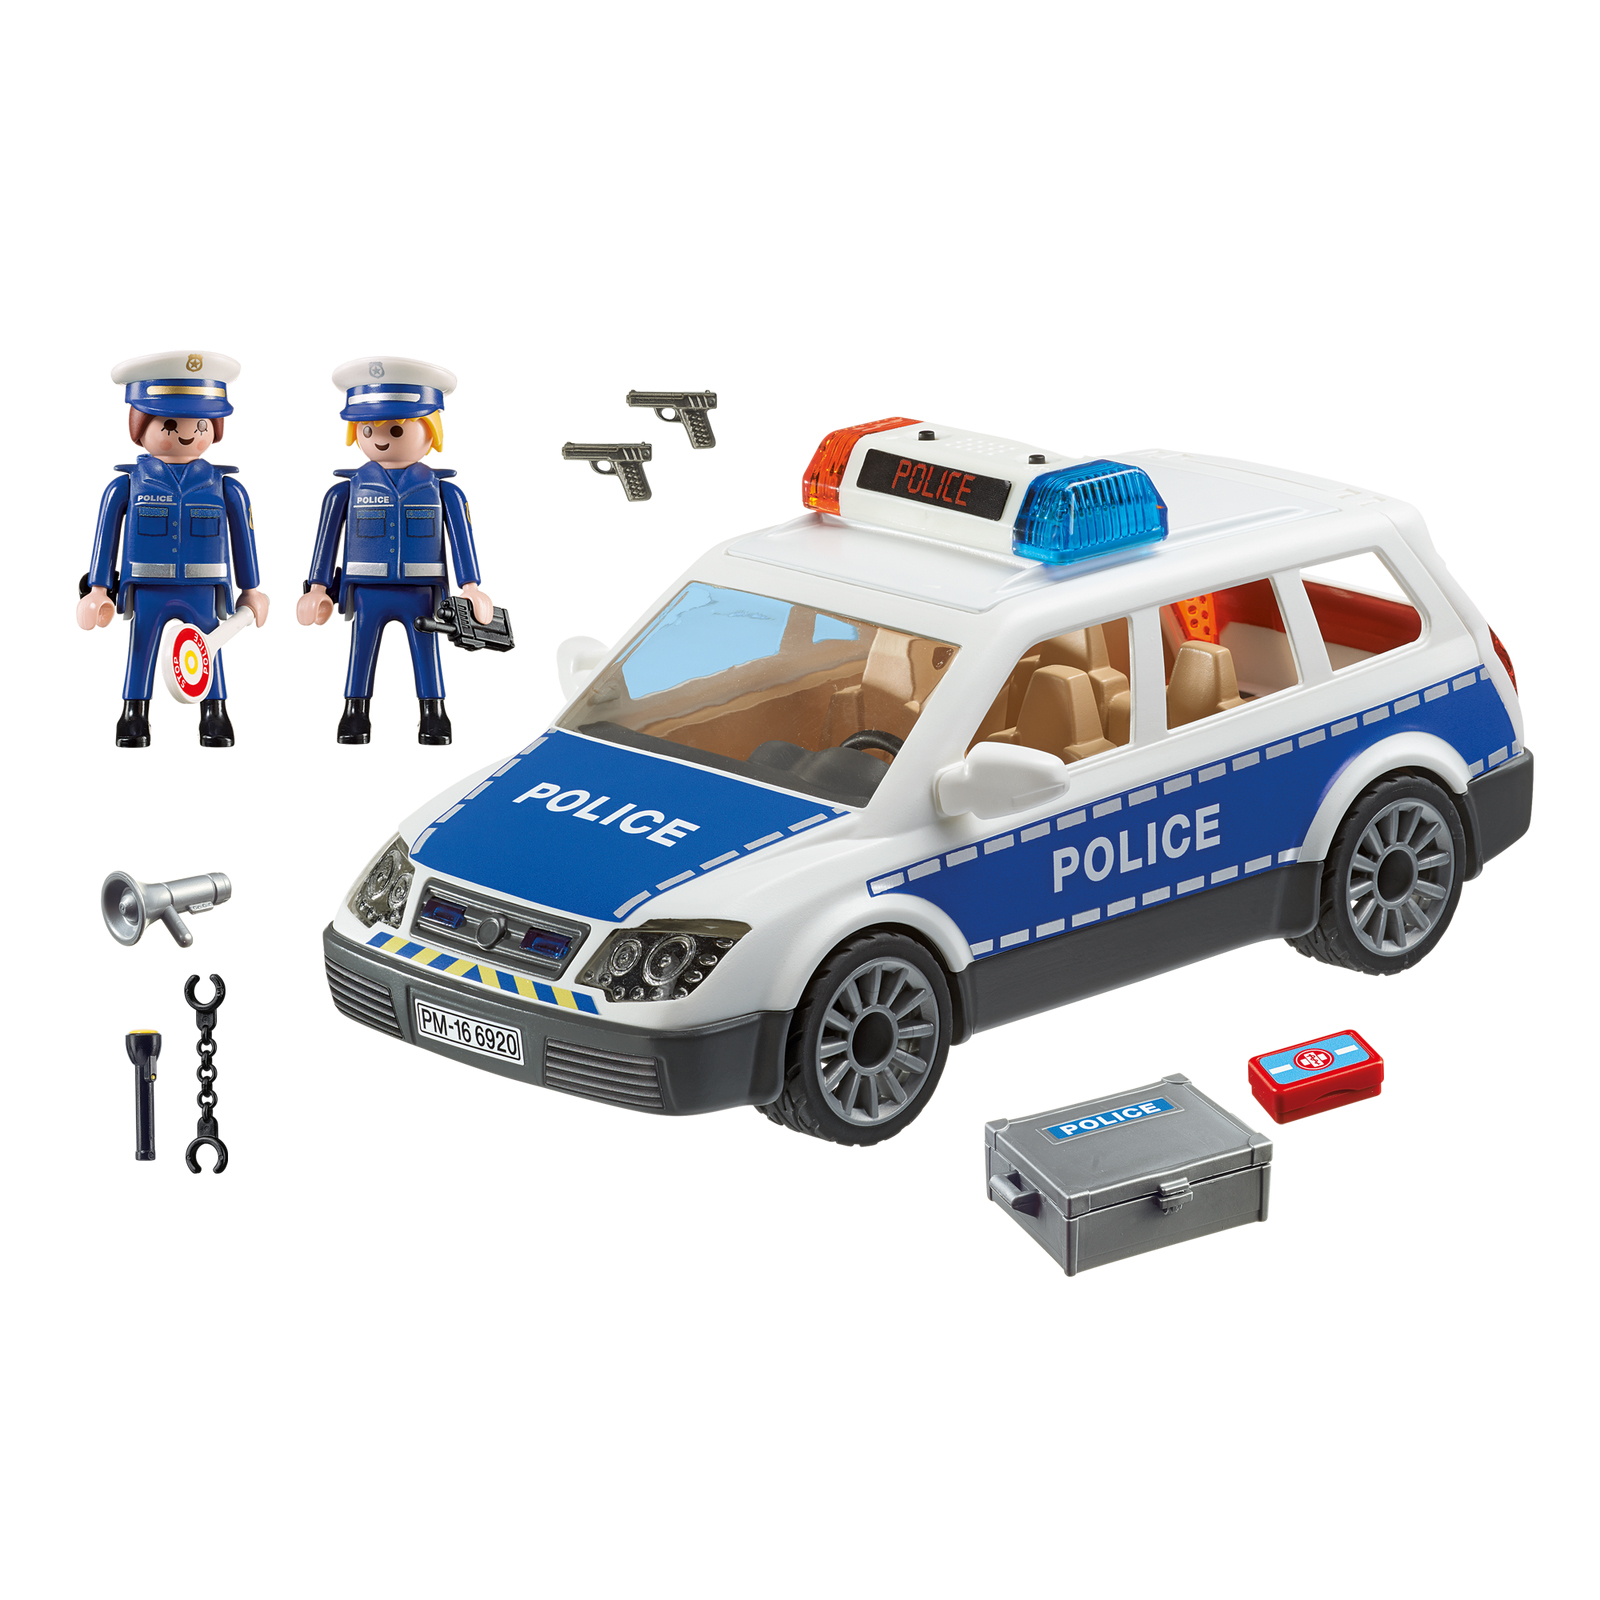 Машинка про полицию. Полицейская машина Playmobil 6920. Playmobil полиция 6920. Полиция Плеймобил Плеймобил. Playmobil City наборы полиция.